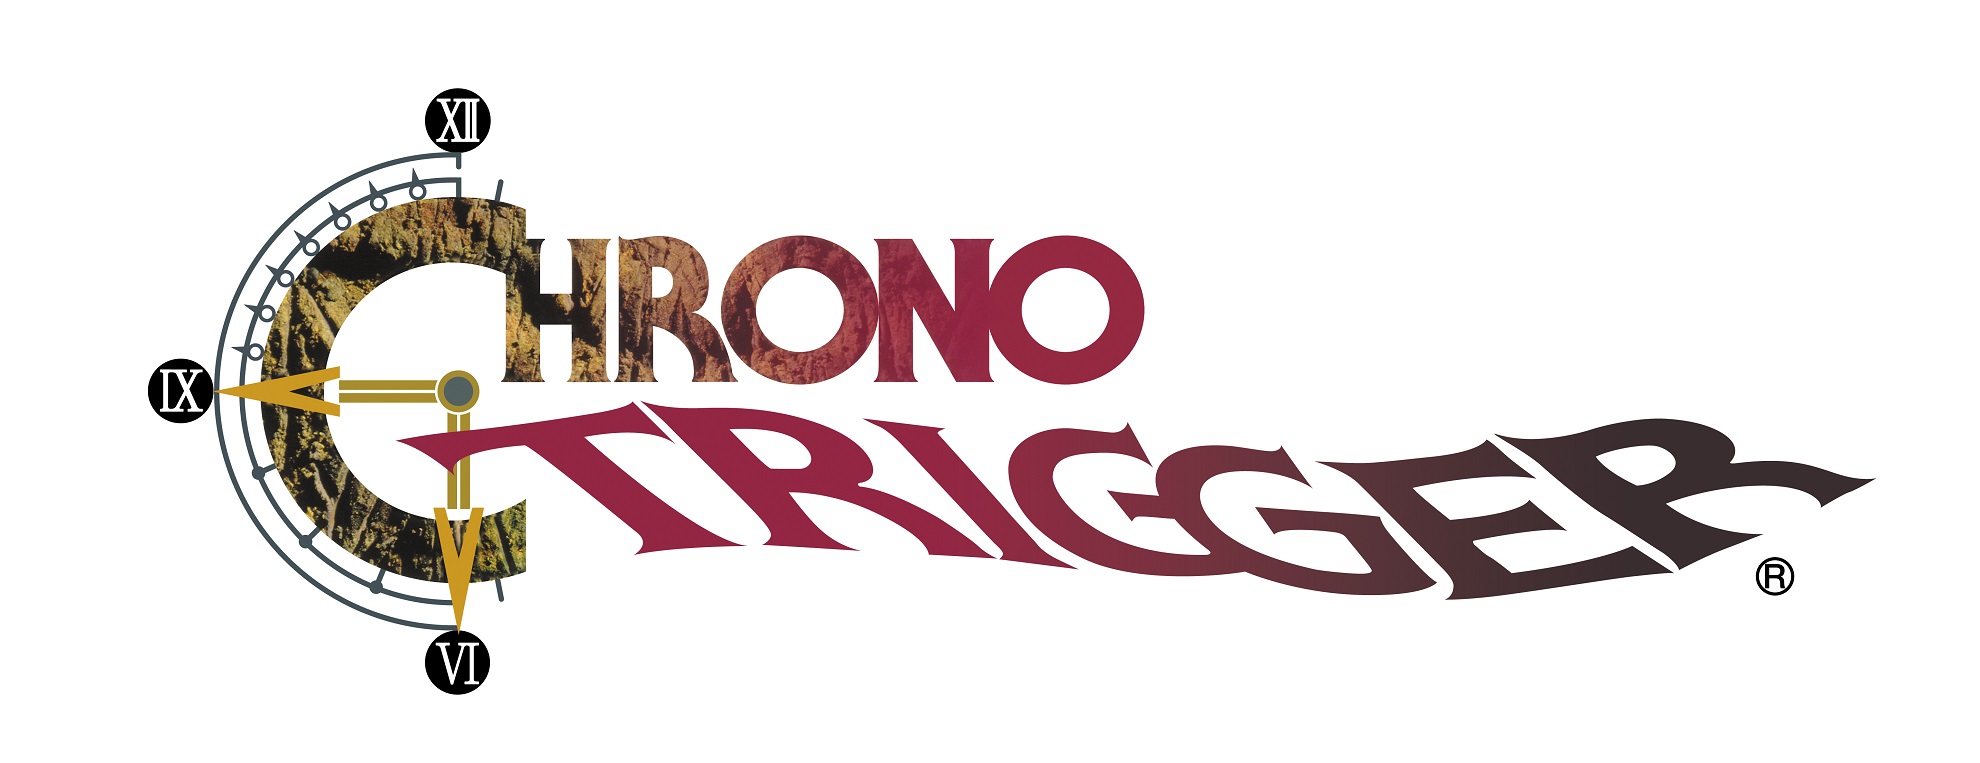 Chrono Trigger 2018 Logo